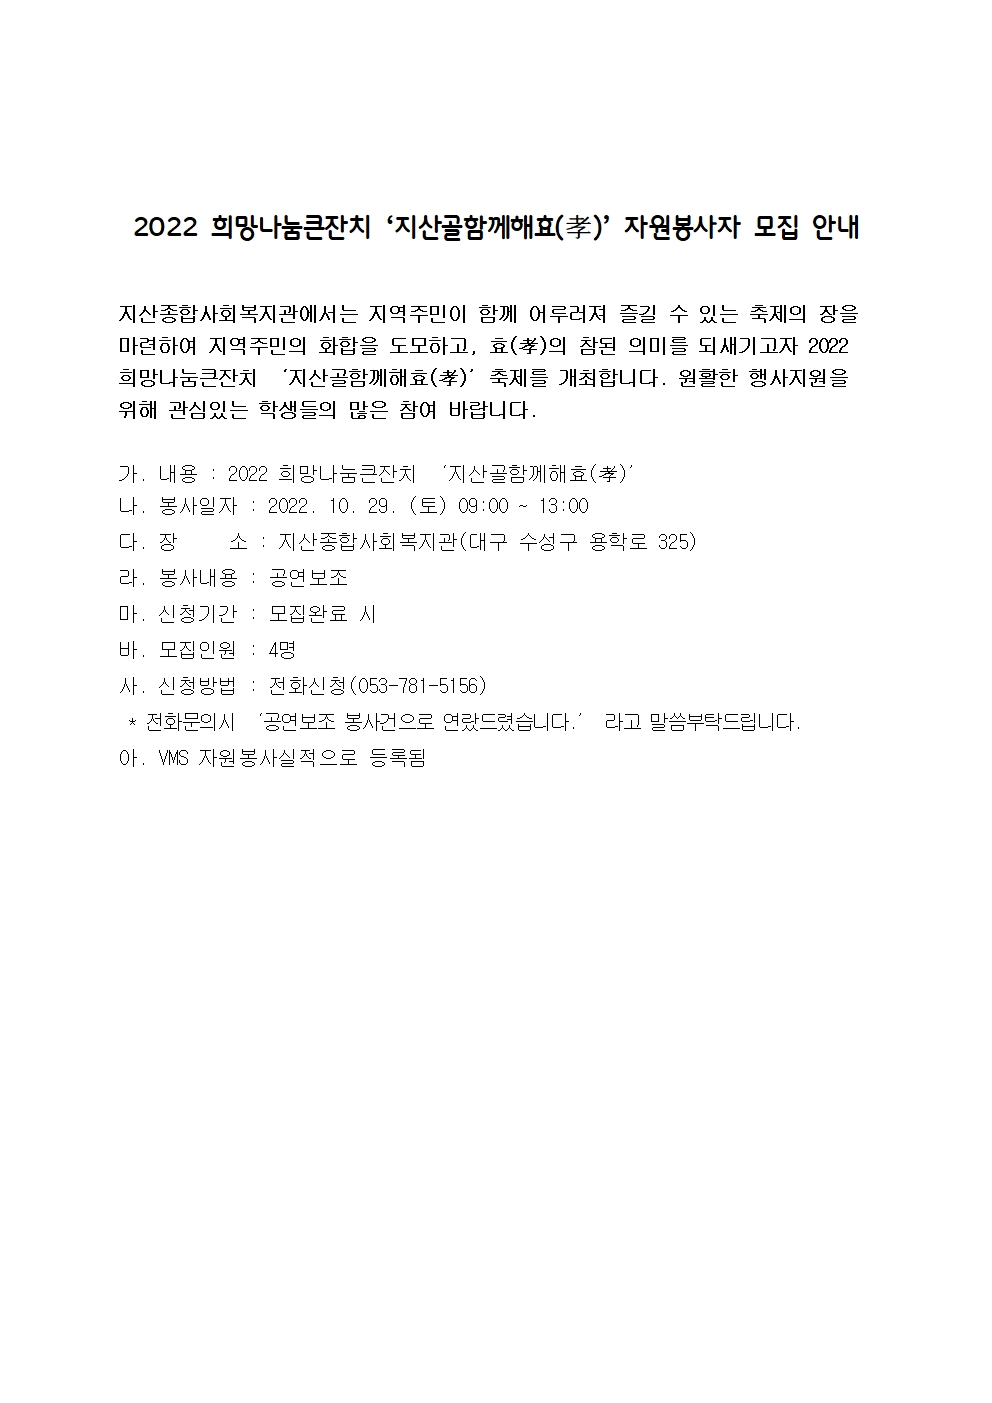 〔개별봉사〕2022 희망나눔큰잔치 ‘지산골함께해효(孝)’ 자원봉사자 모집 안내